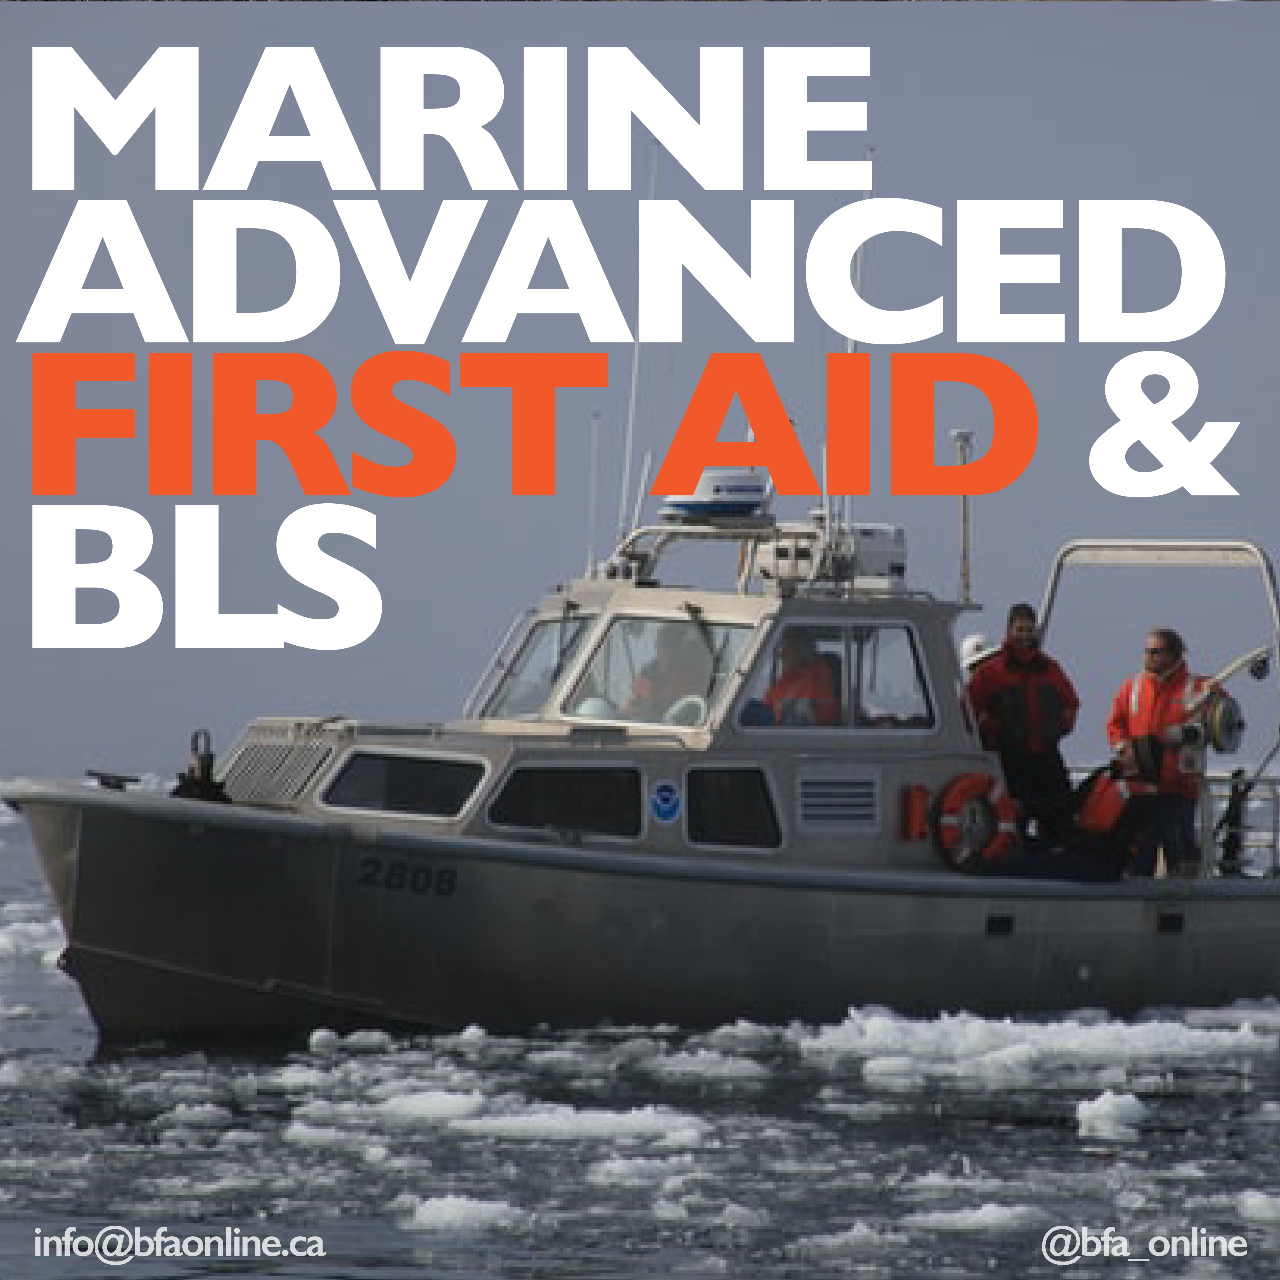 Marine Advanced First Aid BLS & AED